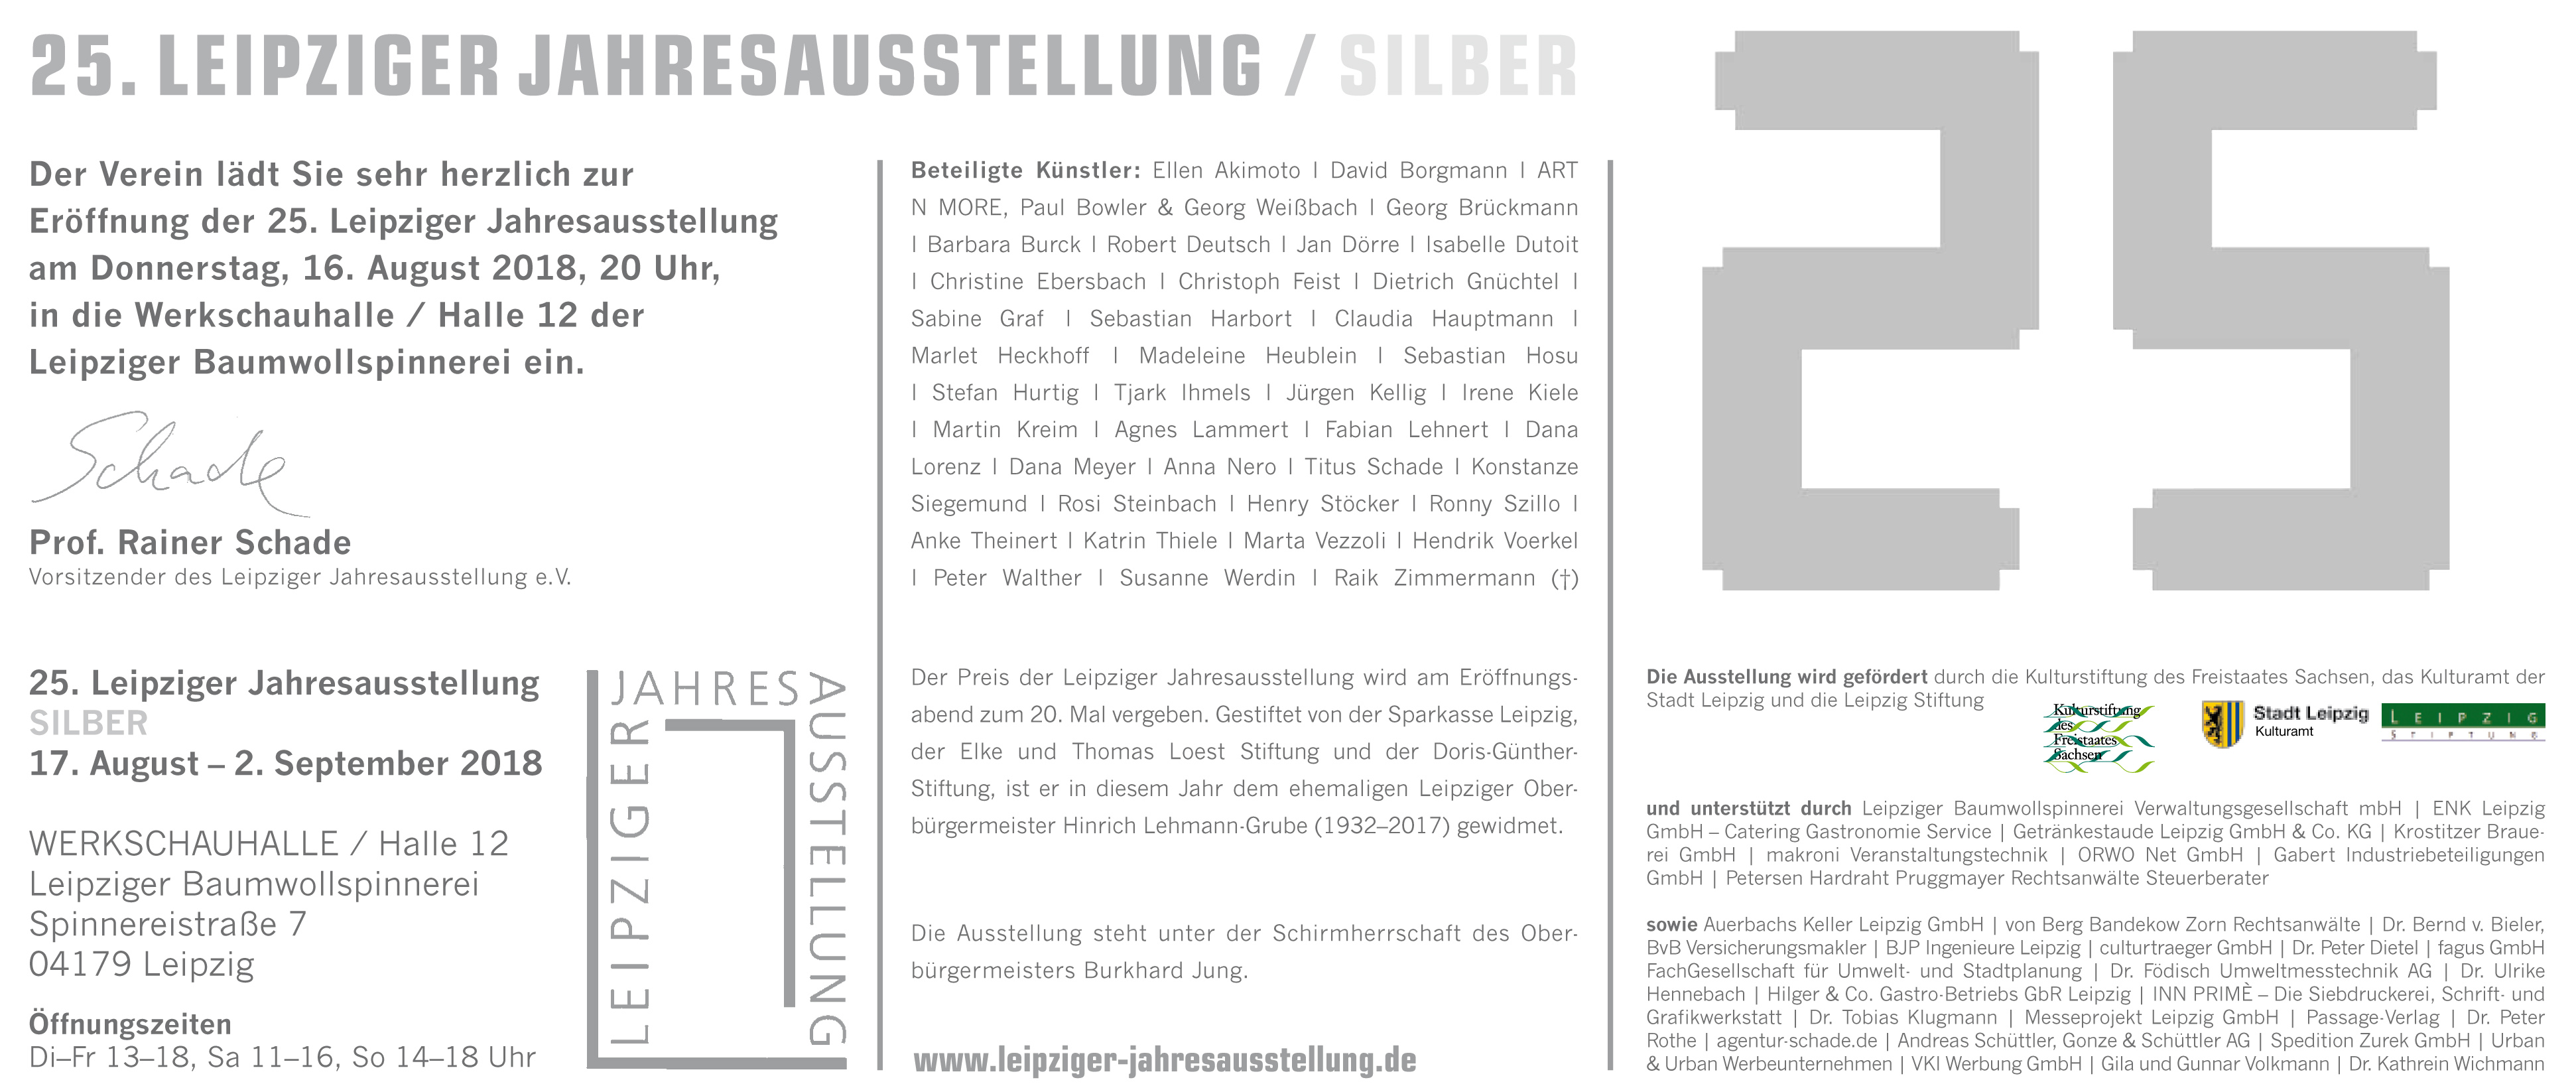 Leipziger Jahresausstellung silber